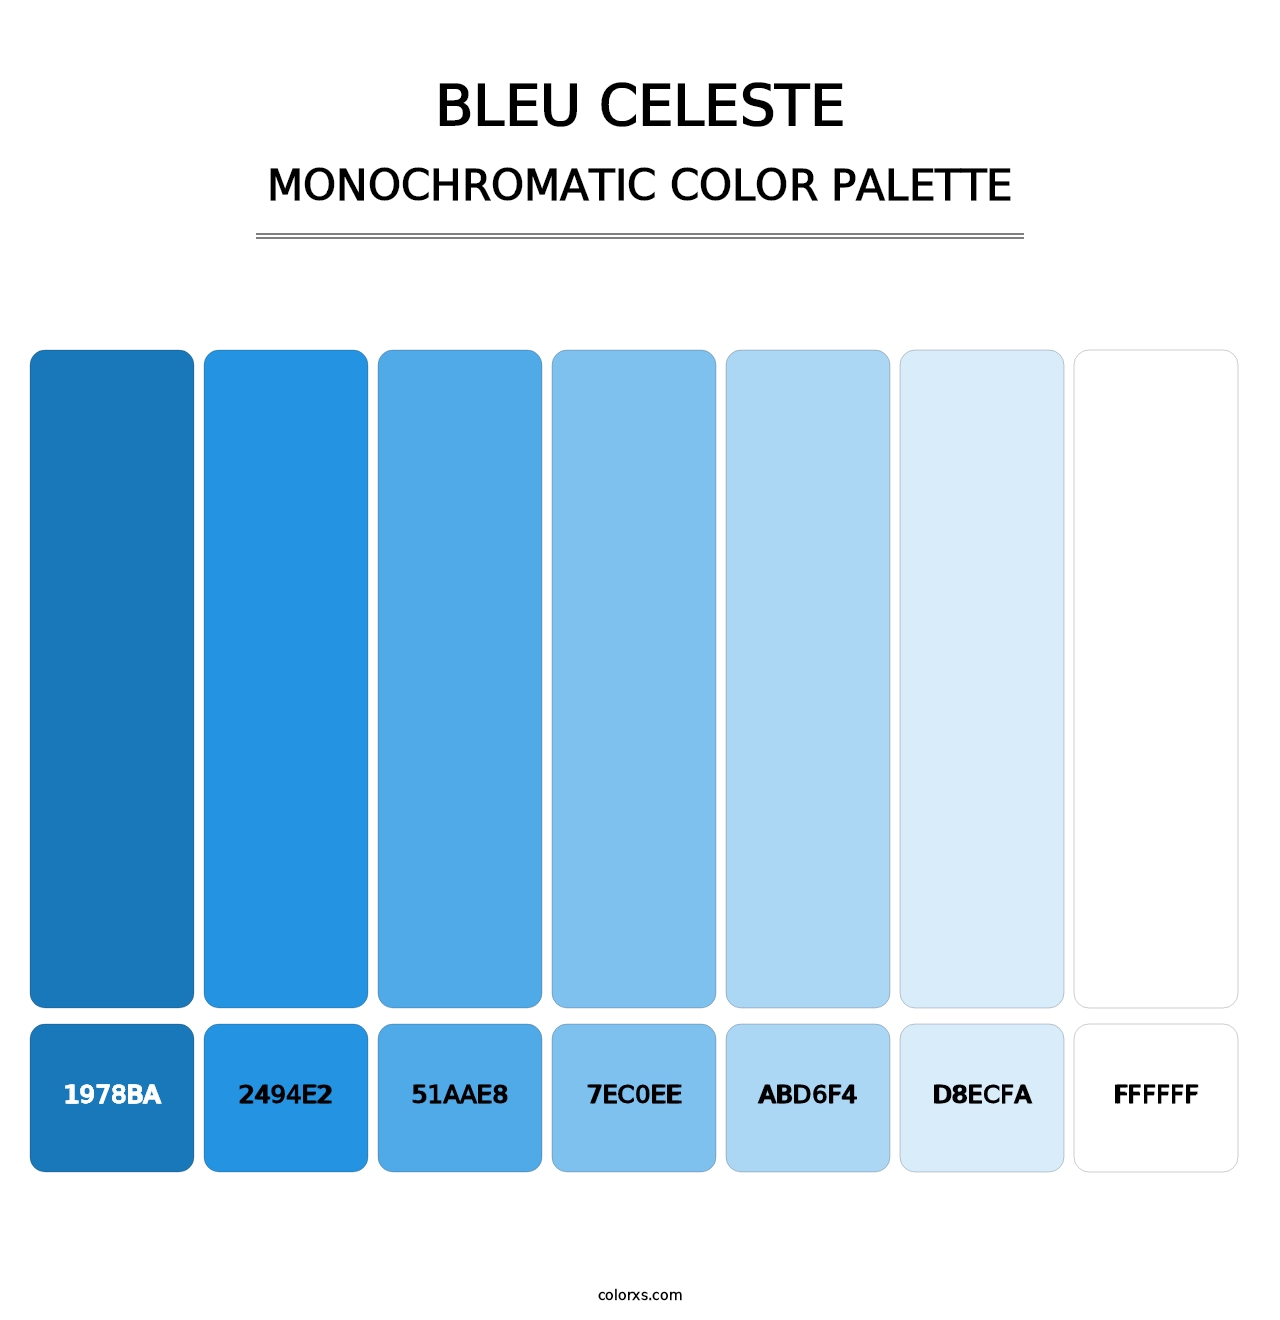 Bleu Celeste - Monochromatic Color Palette